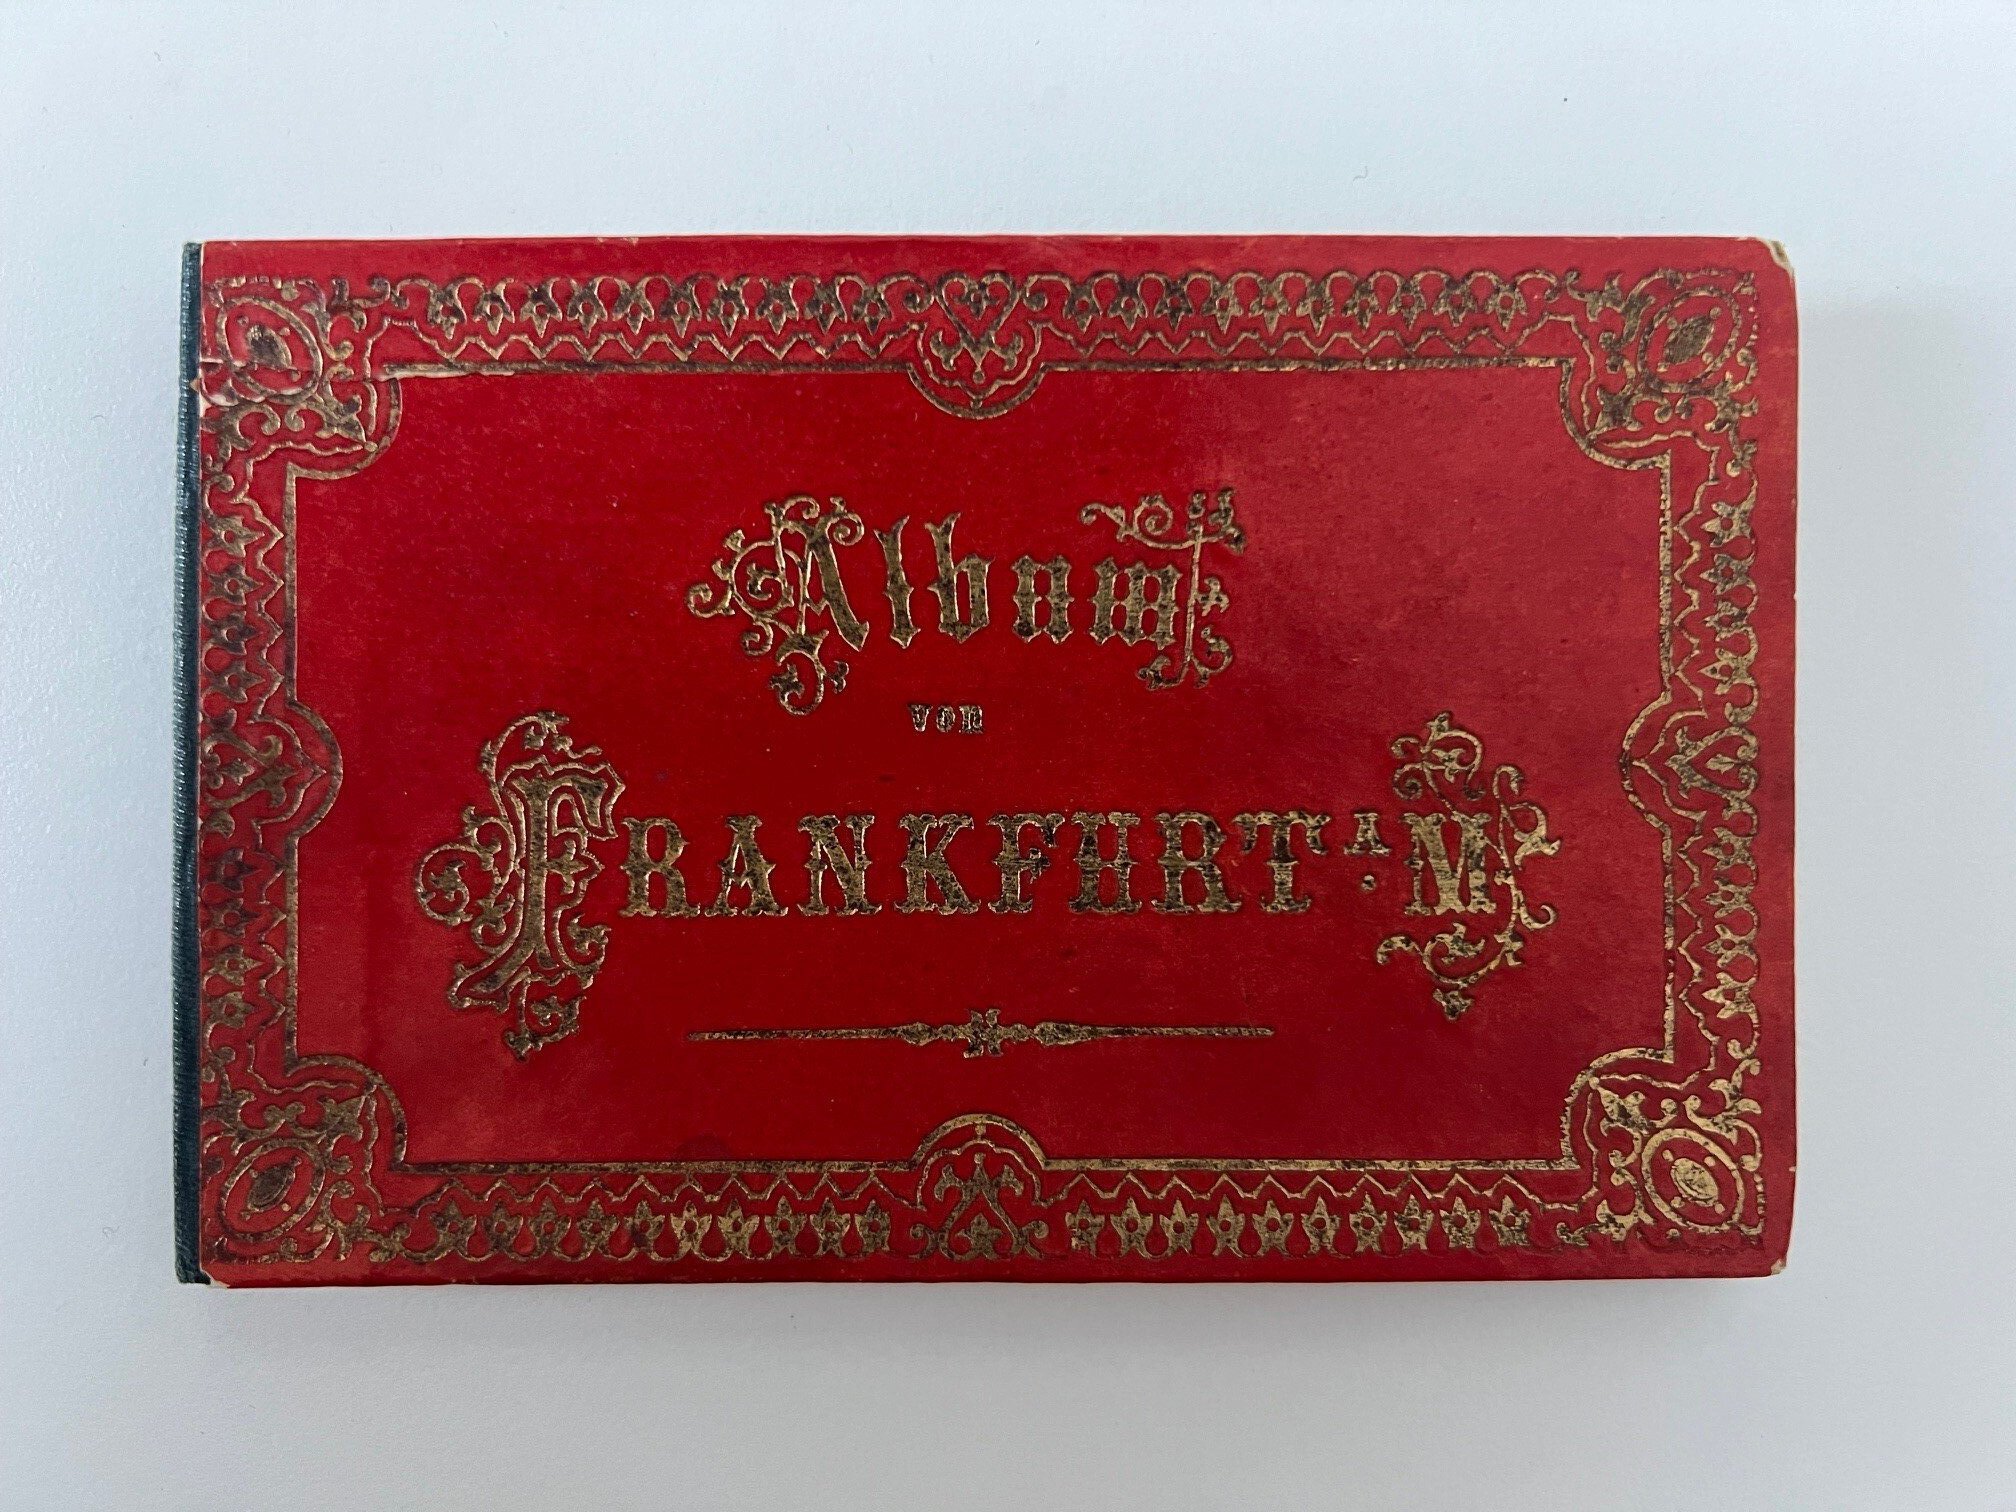 R. Baist, Album von Frankfurt a. M., 12 Lithographien als Leporello, ca. 1870. (Taunus-Rhein-Main - Regionalgeschichtliche Sammlung Dr. Stefan Naas CC BY-NC-SA)